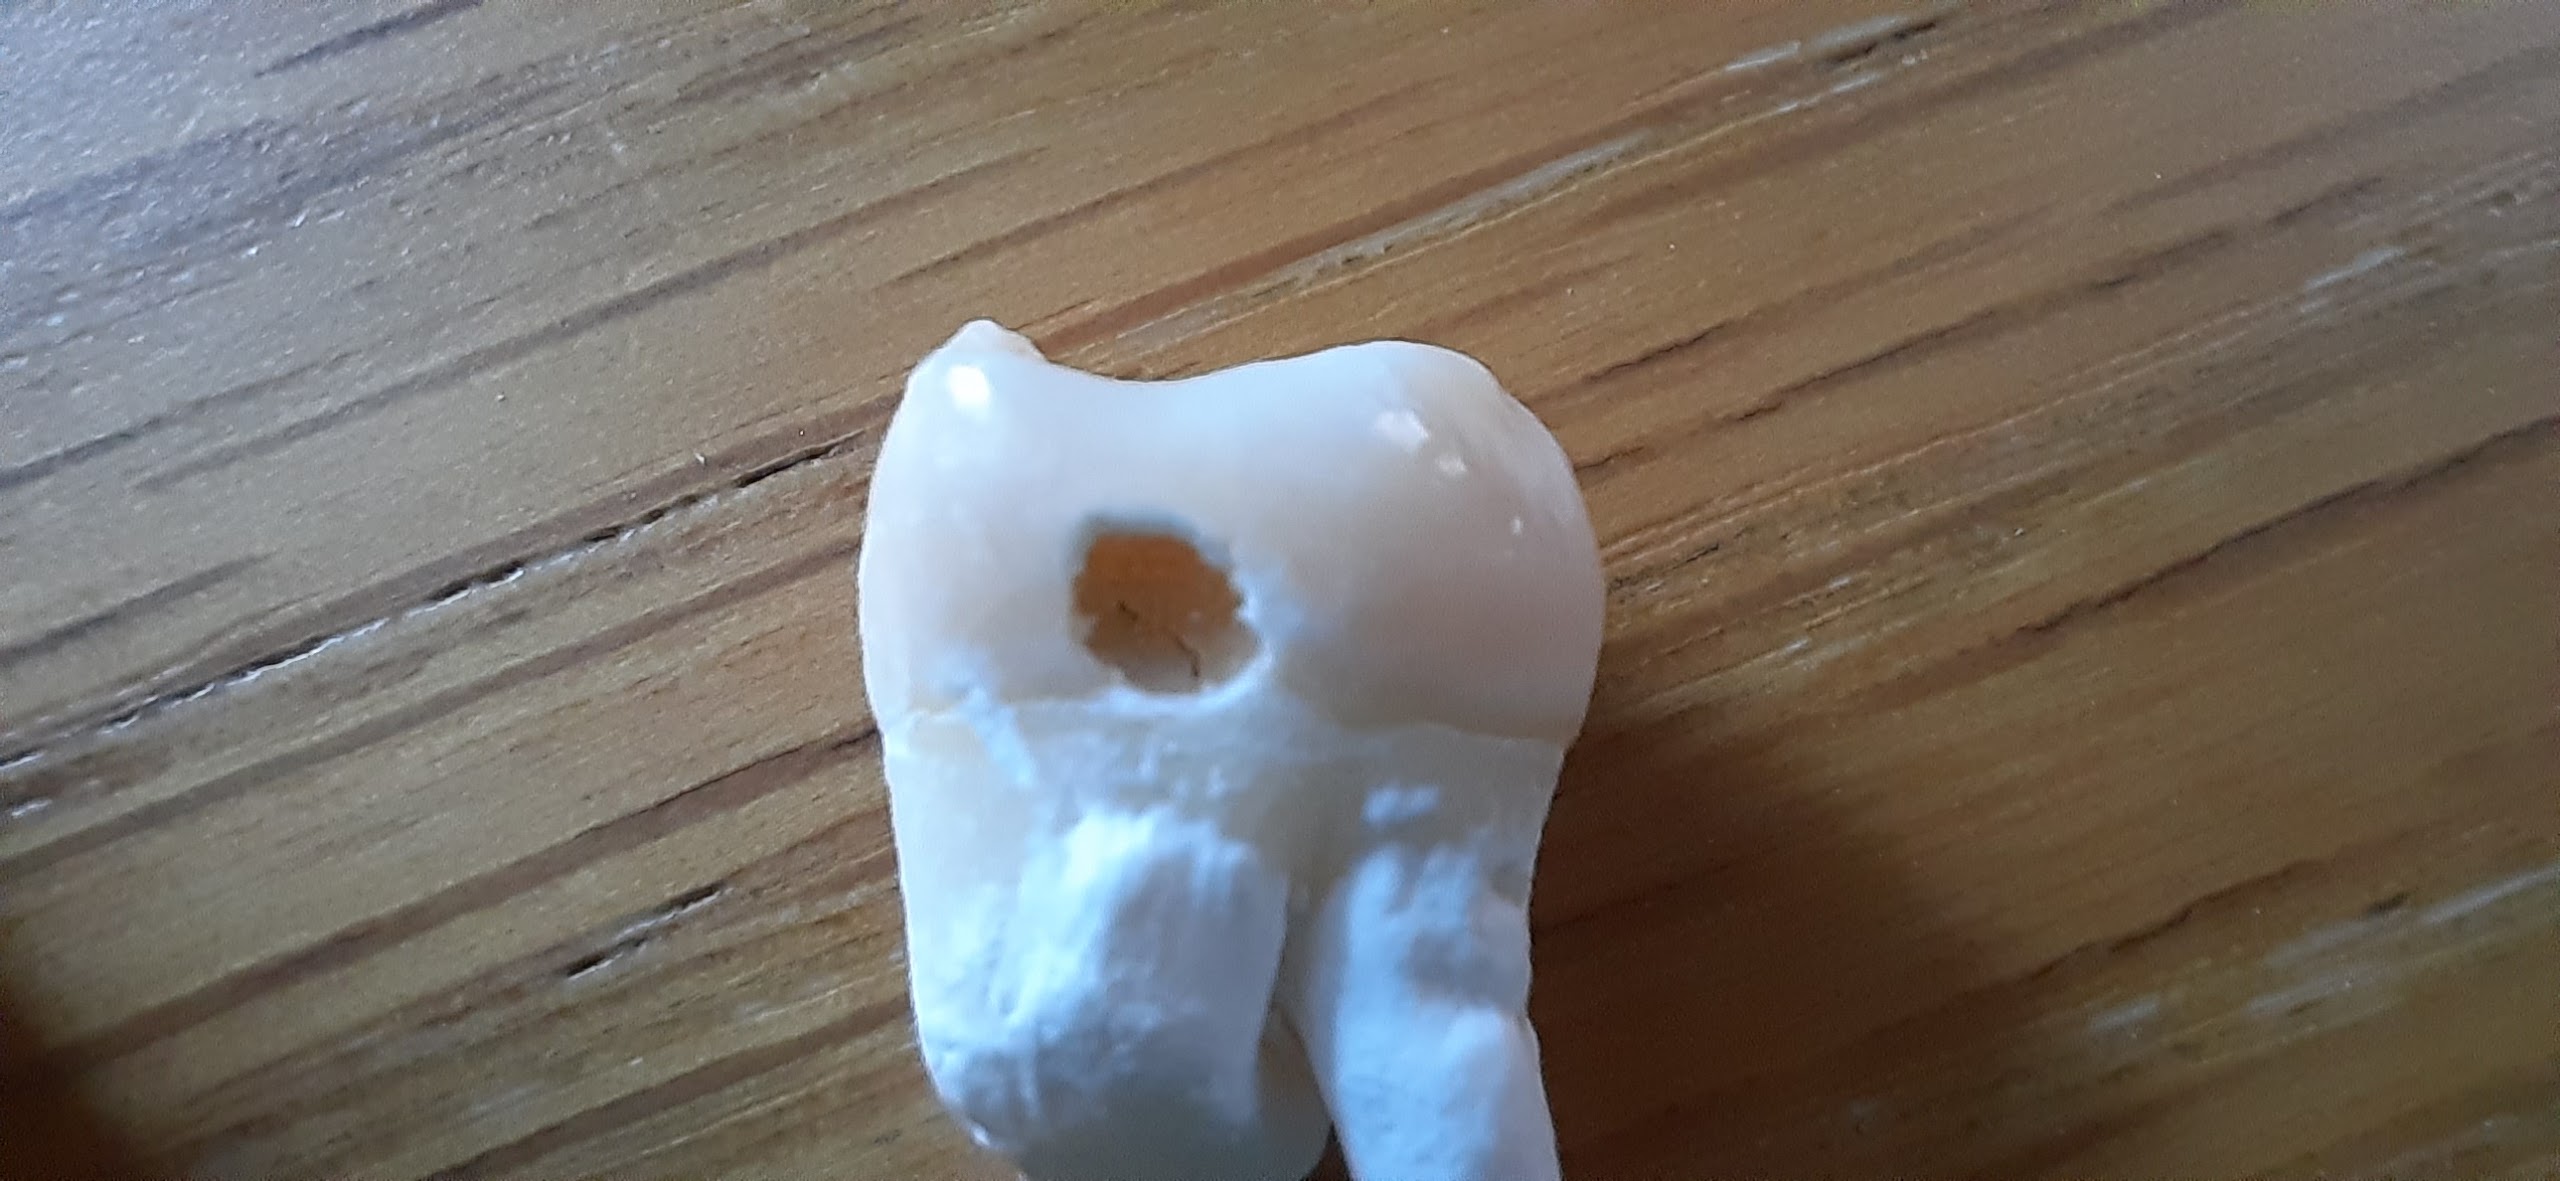 Дырка в зубе после чистки и вымачивания в белизне. Запах ушел.